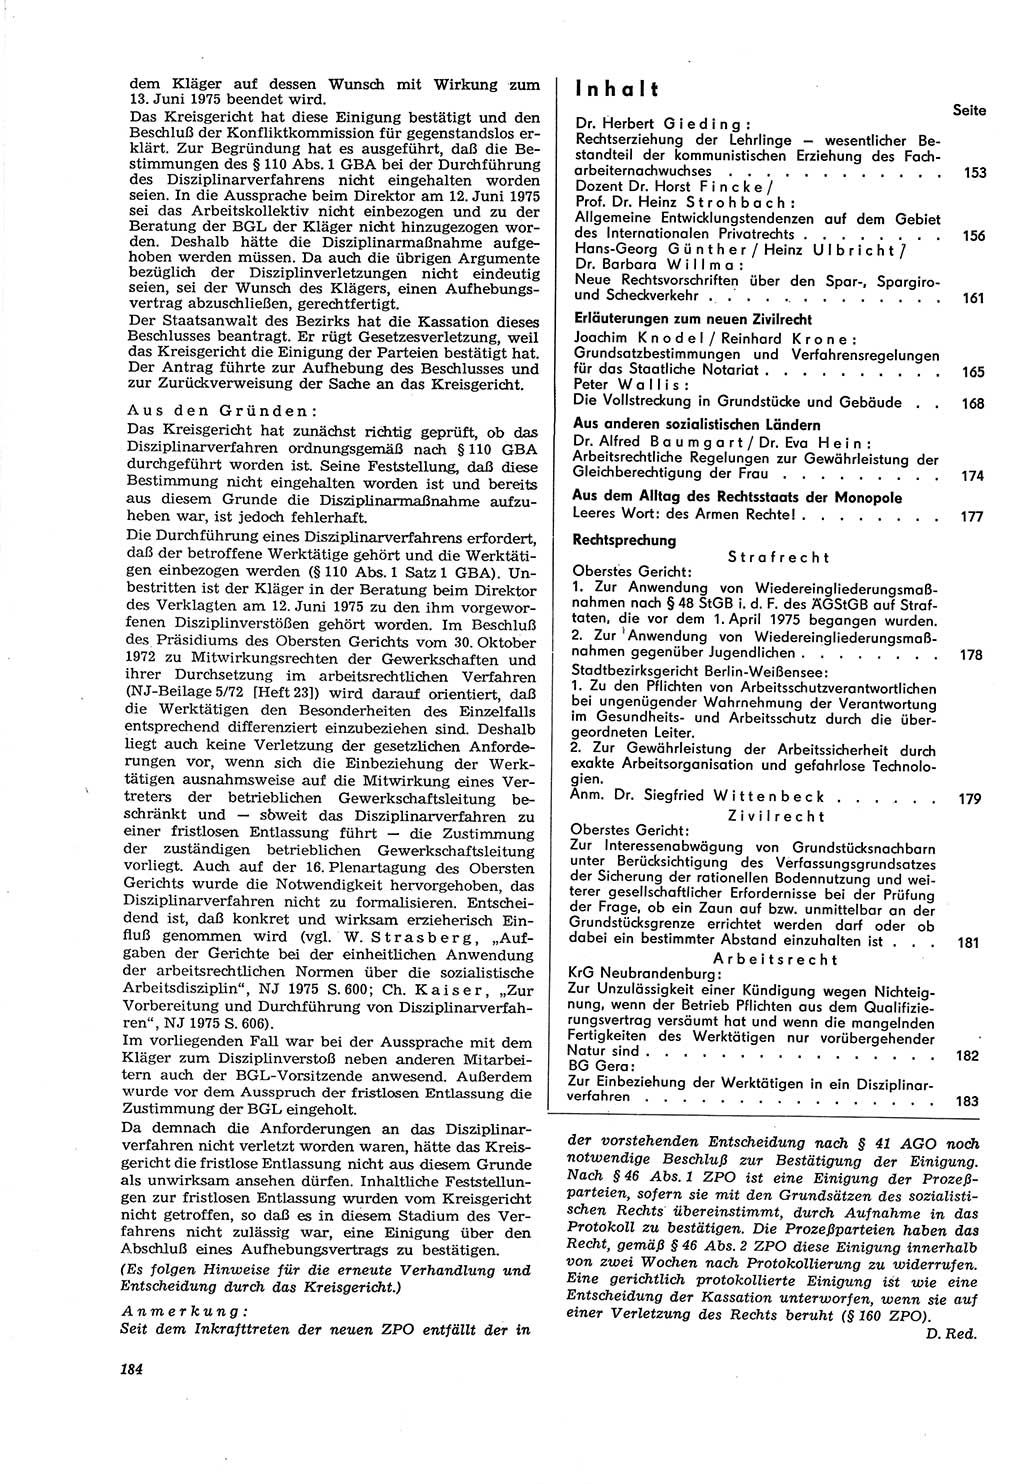 Neue Justiz (NJ), Zeitschrift für Recht und Rechtswissenschaft [Deutsche Demokratische Republik (DDR)], 30. Jahrgang 1976, Seite 184 (NJ DDR 1976, S. 184)